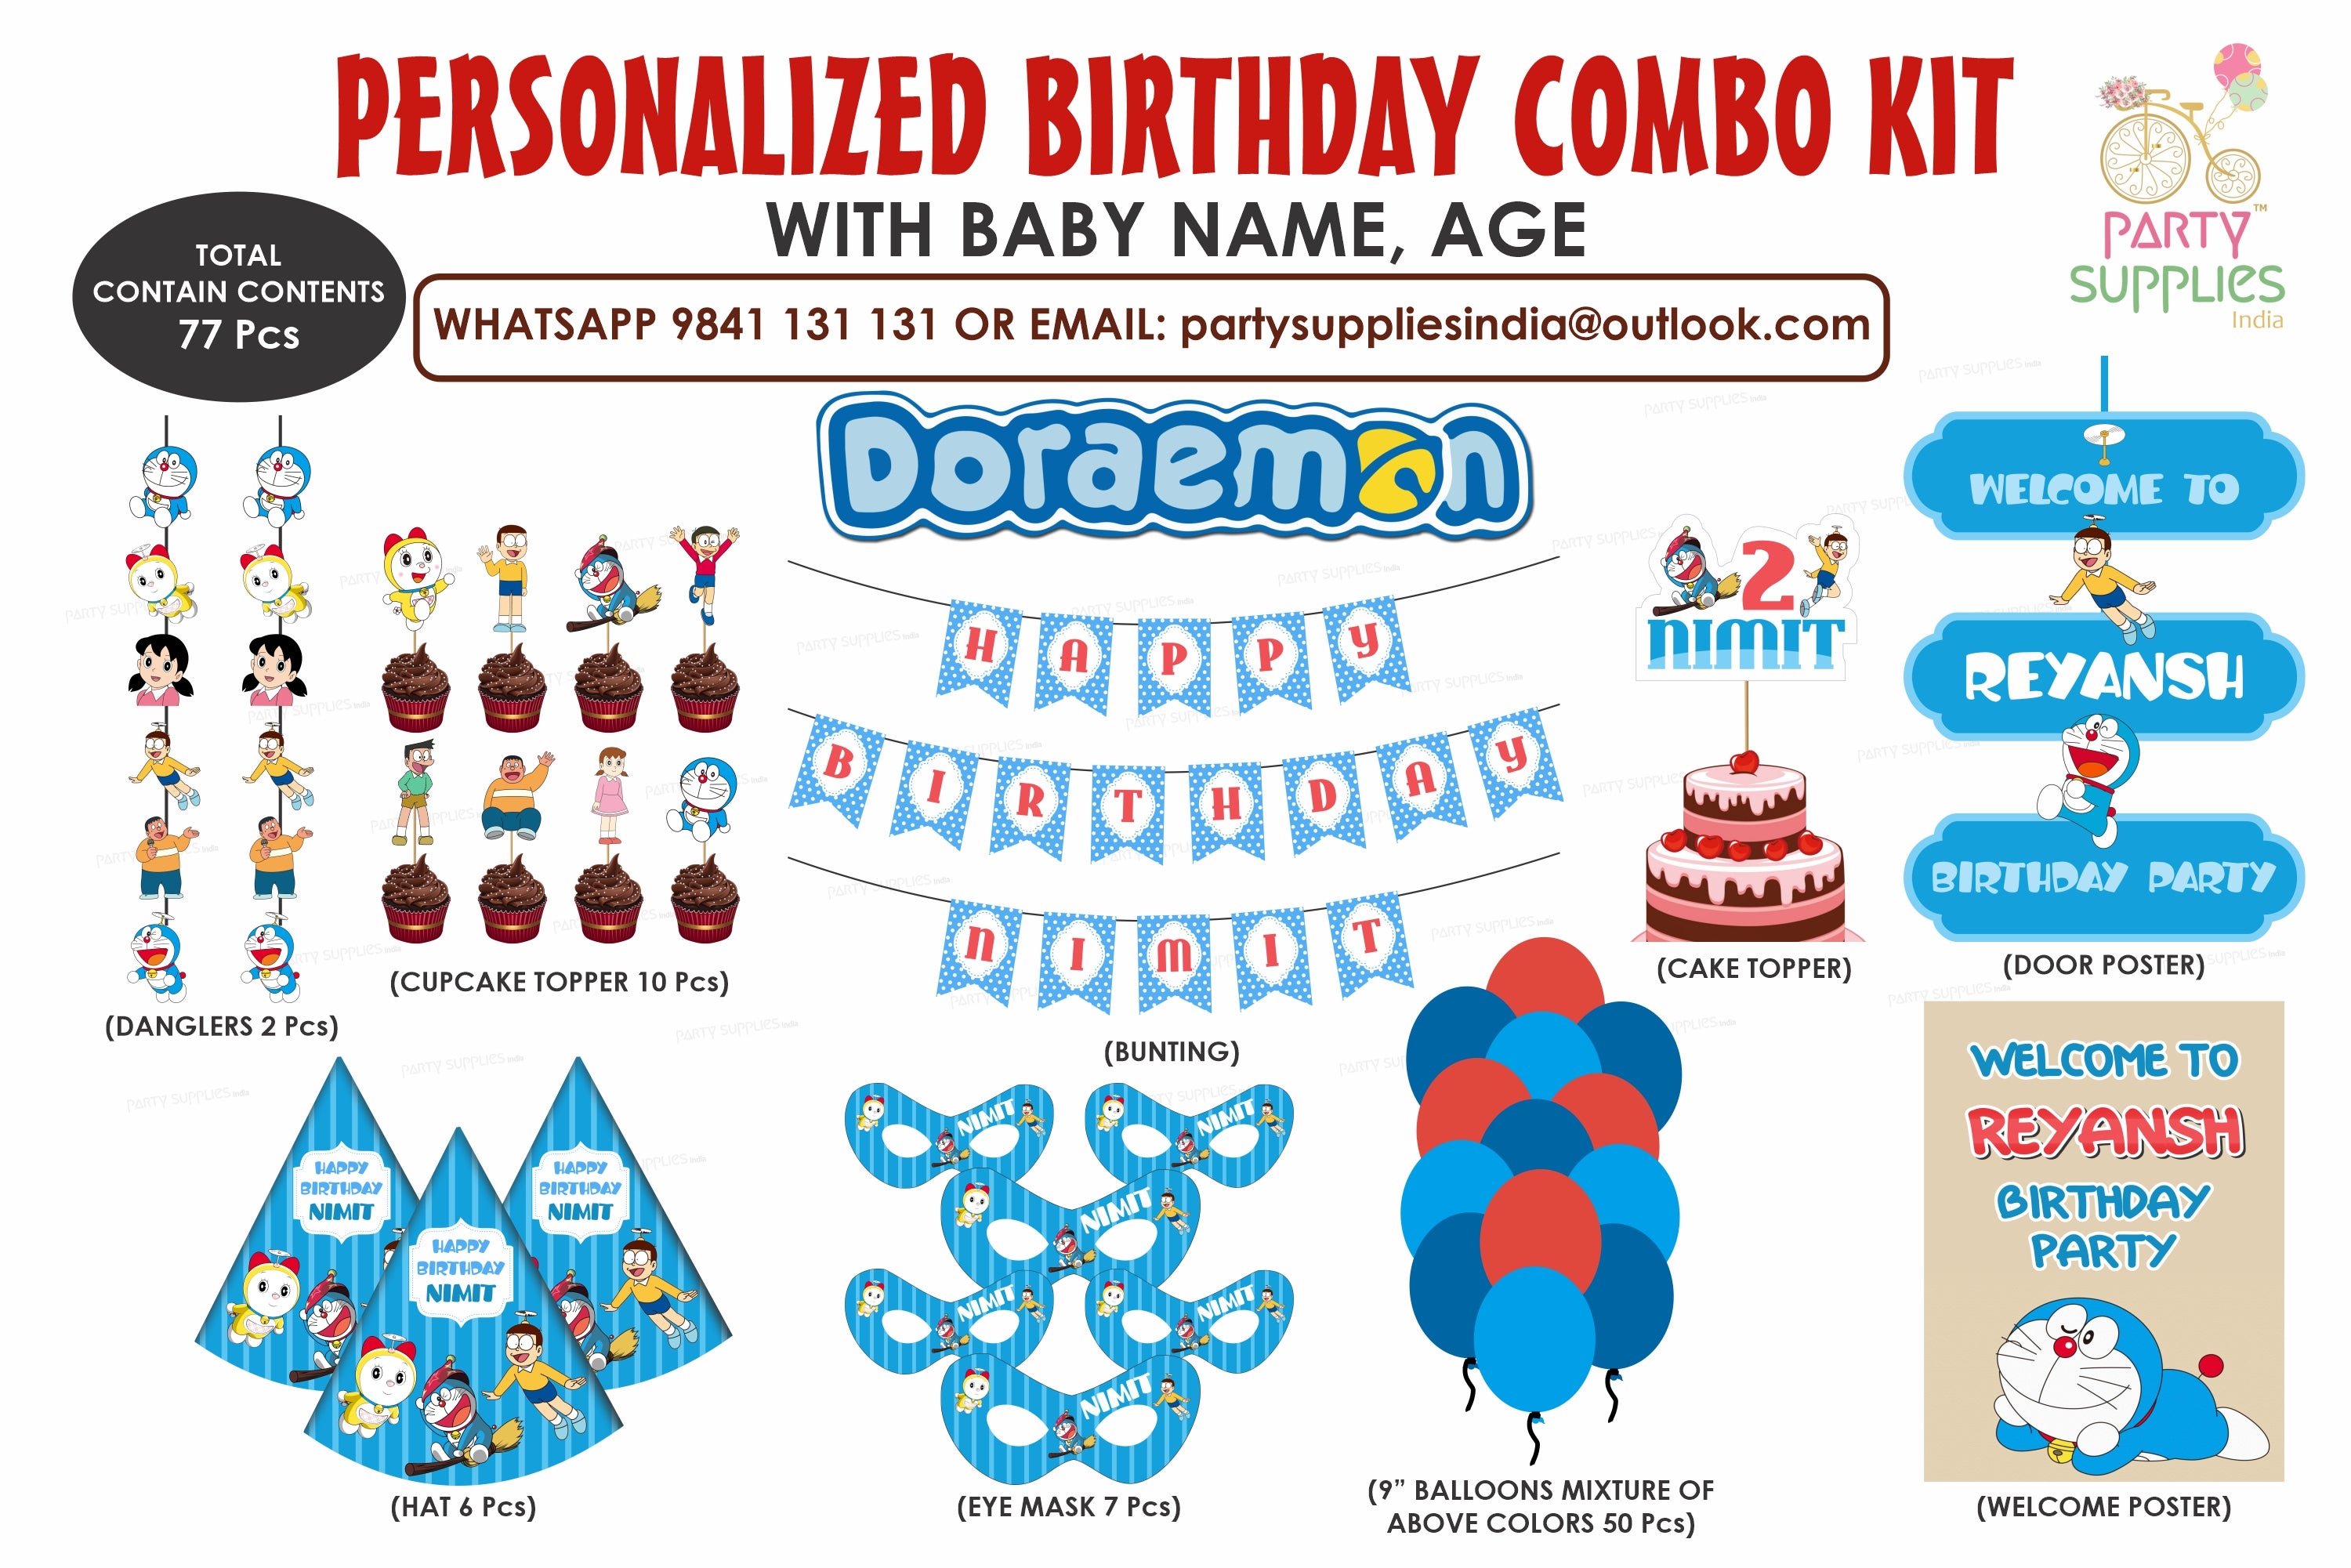 PSI Doraemon Theme Preferred Combo Kit